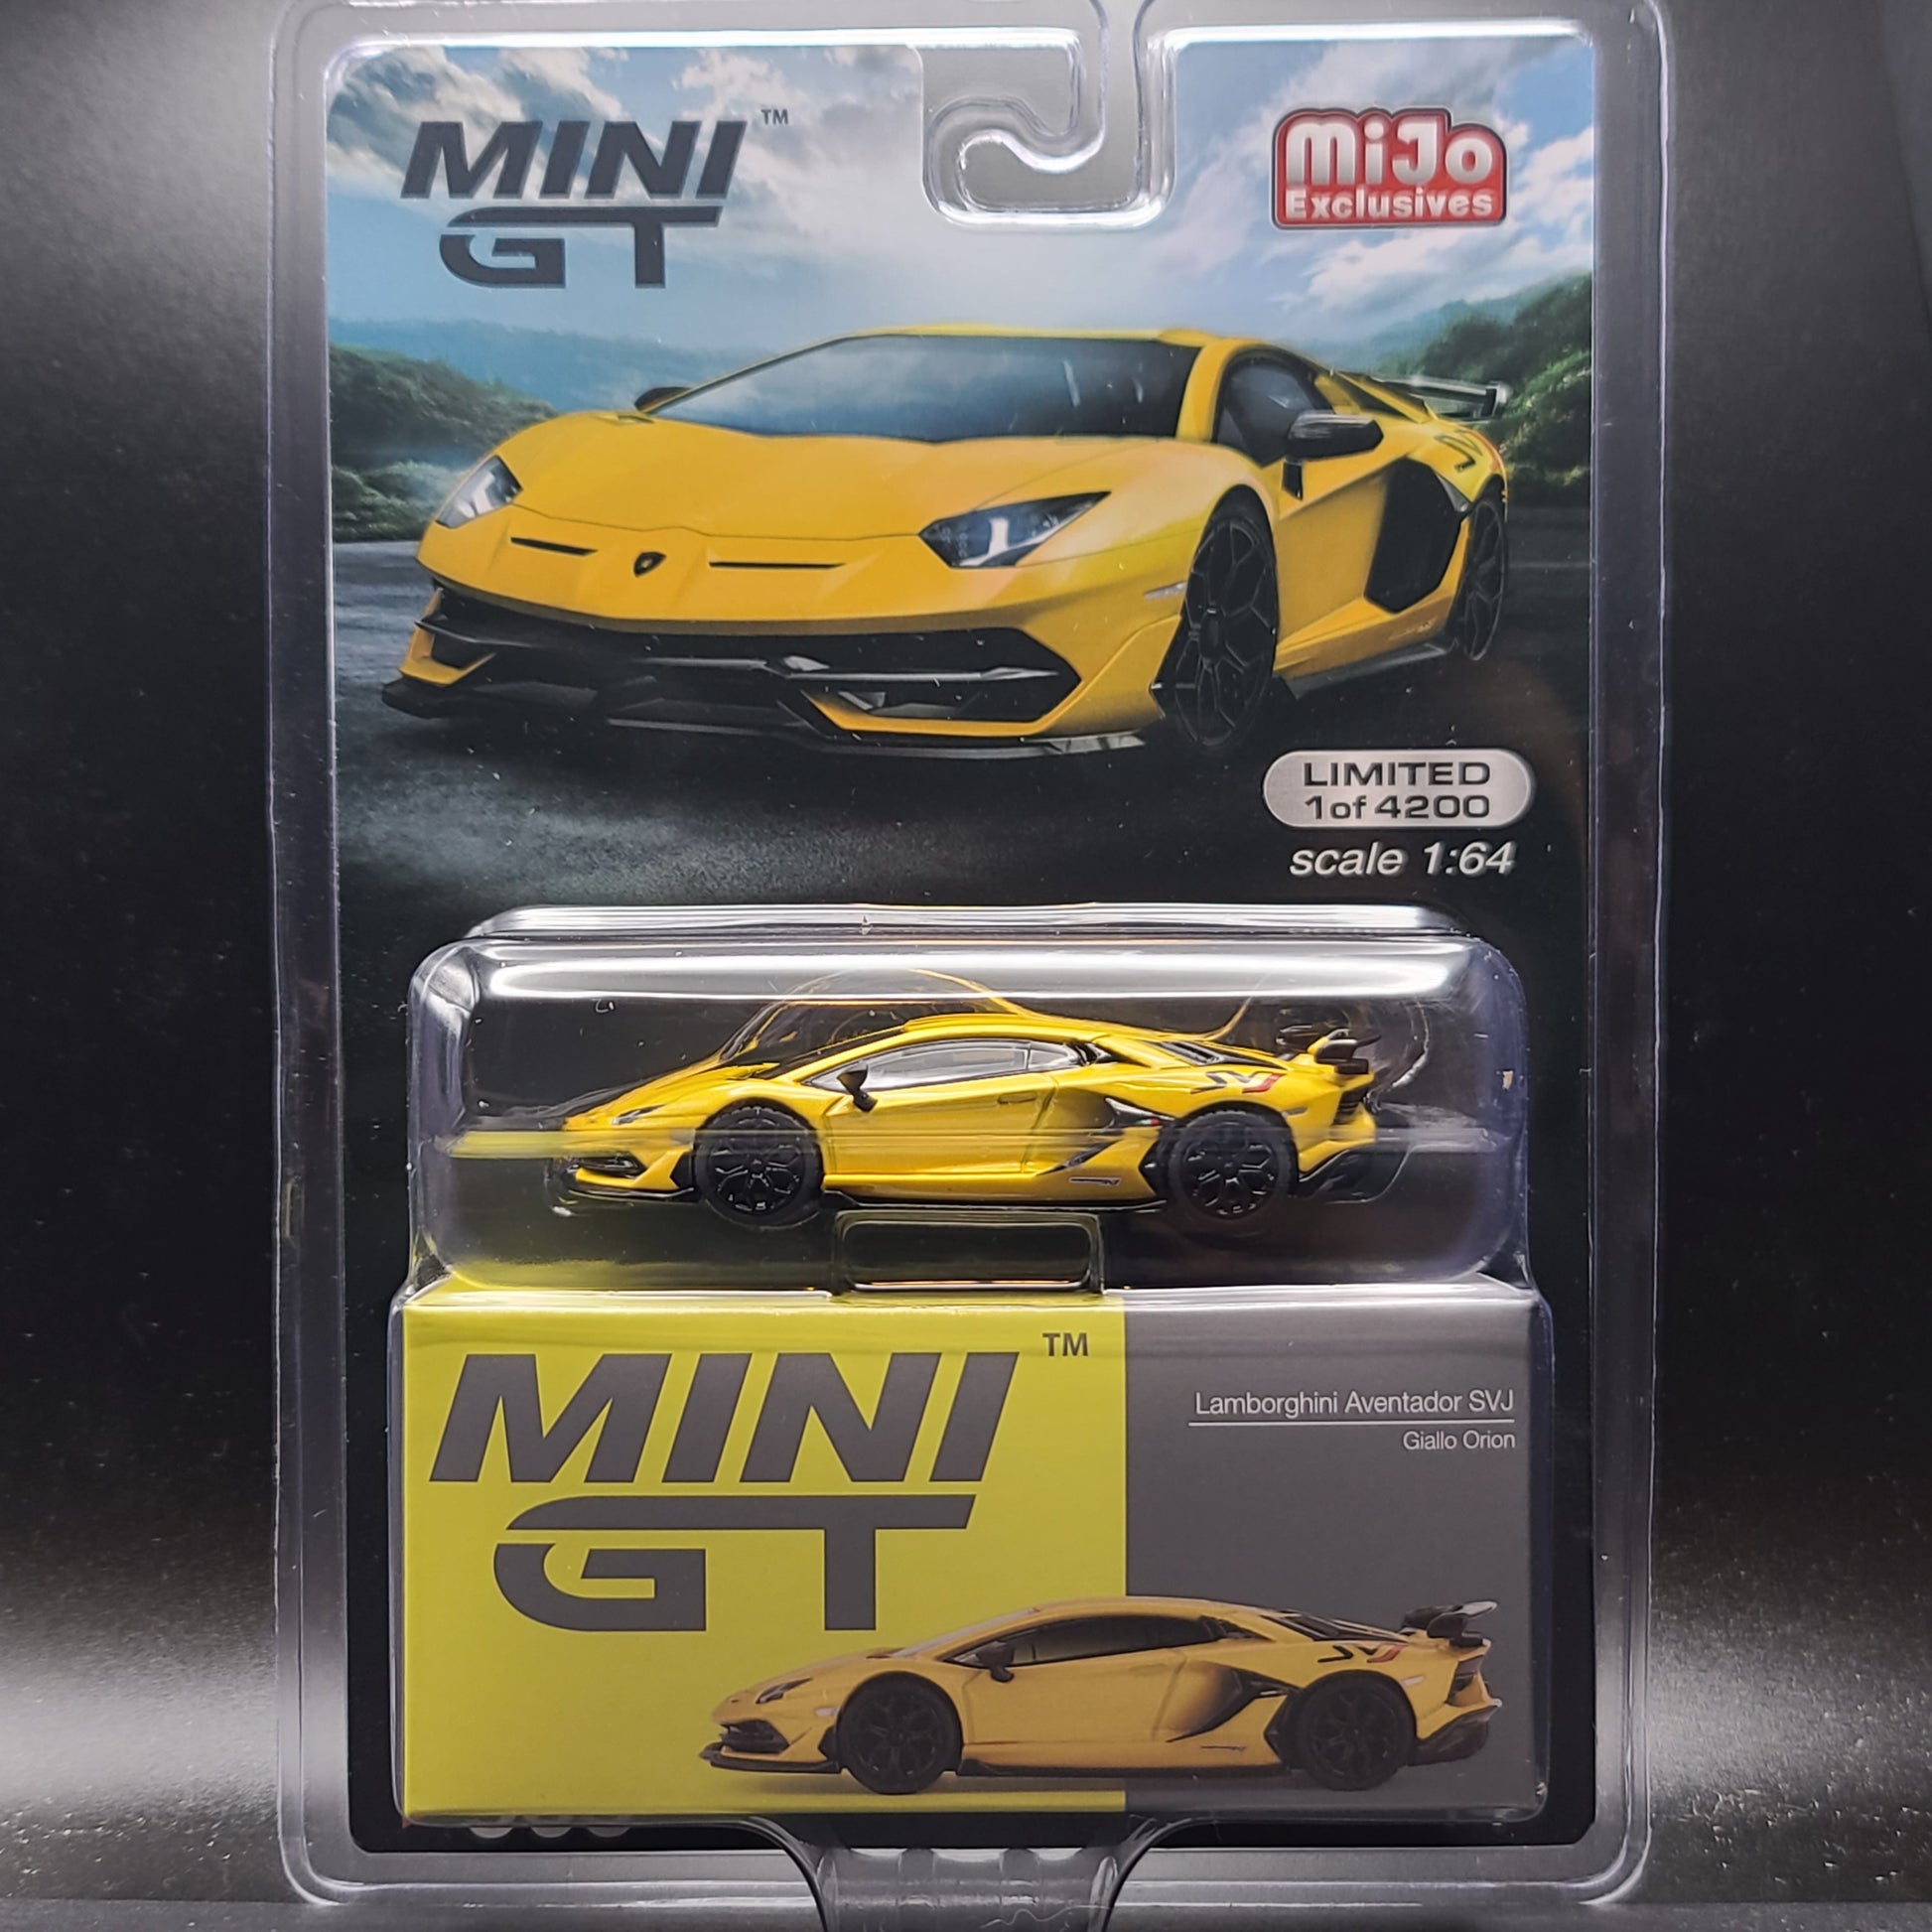 MINI GT 1/64 Scale Die-cast Cars 